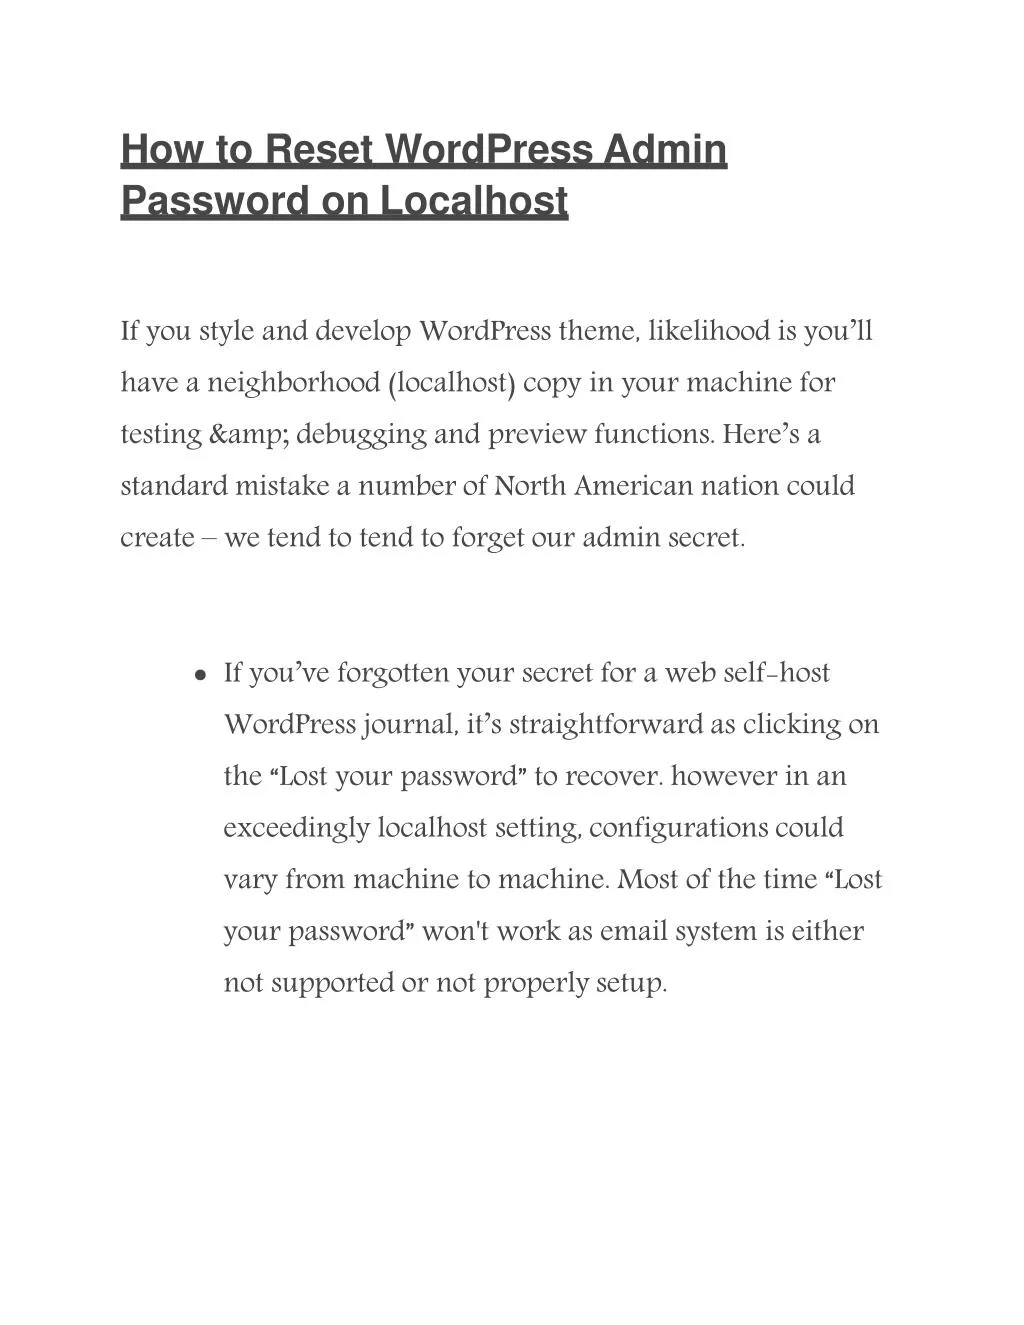 how to reset wordpress admin password